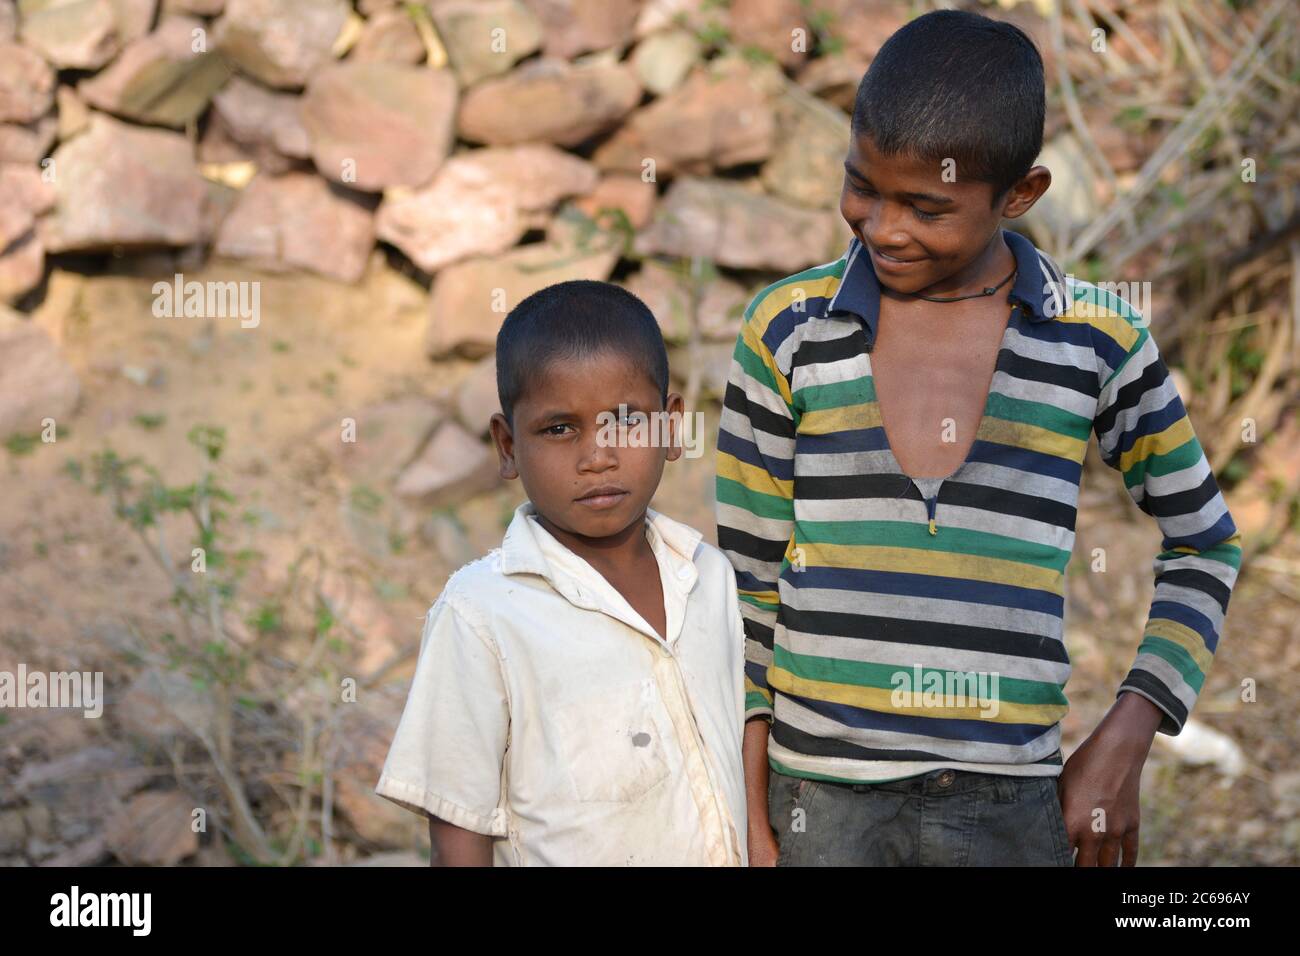 TIKAMGARH, MADHYA PRADESH, INDIA - 24 DE MARZO de 2020: Felices niños de la aldea India rural. Foto de stock